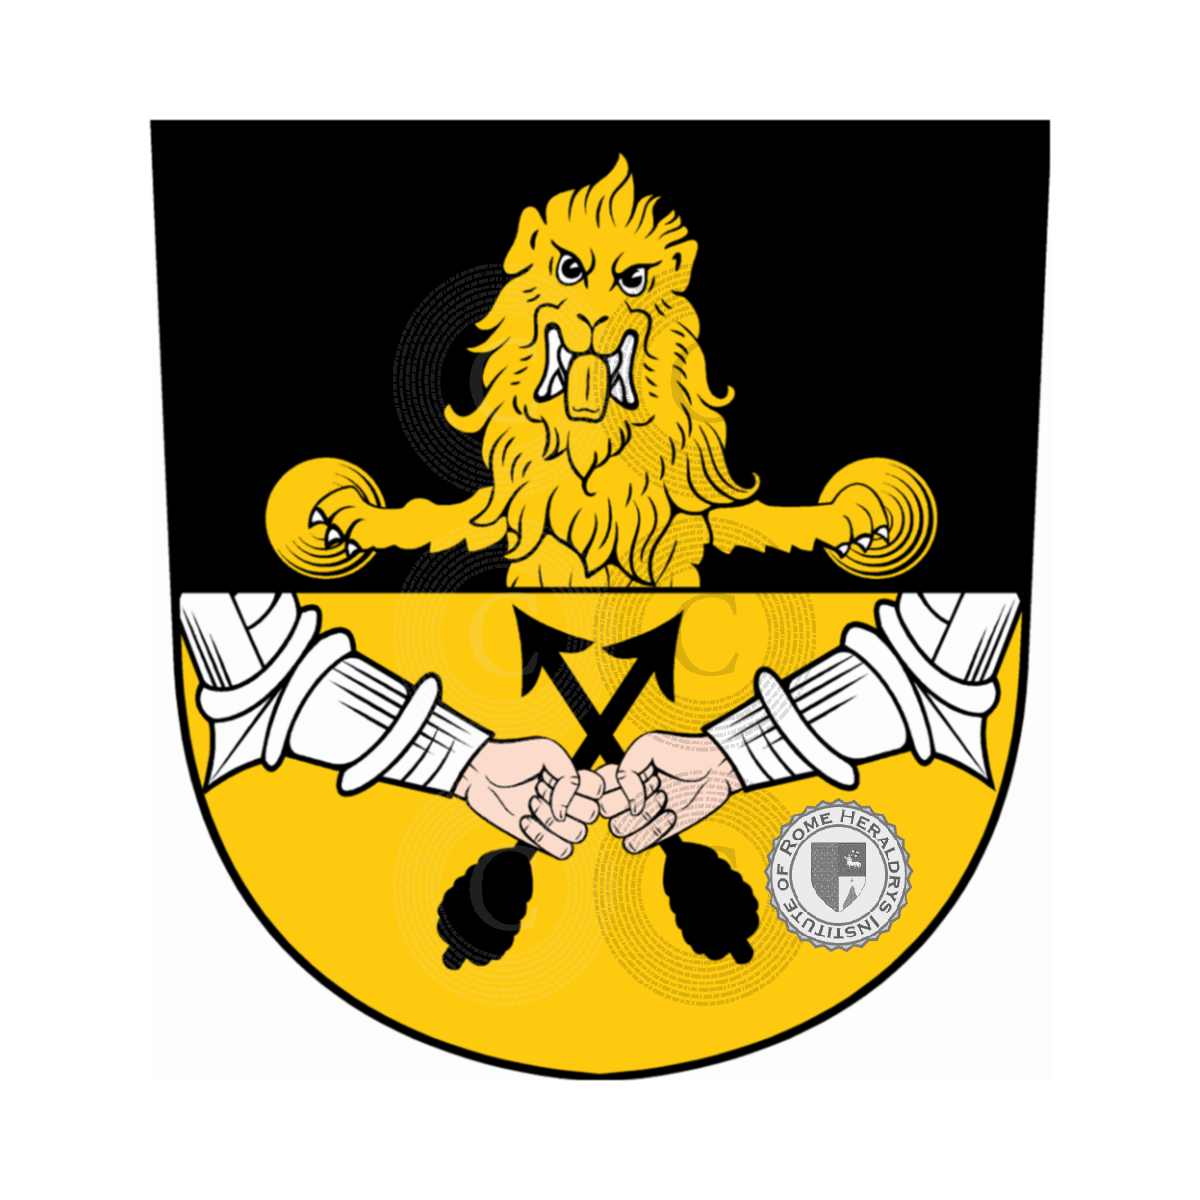 Coat of arms of familyTeller